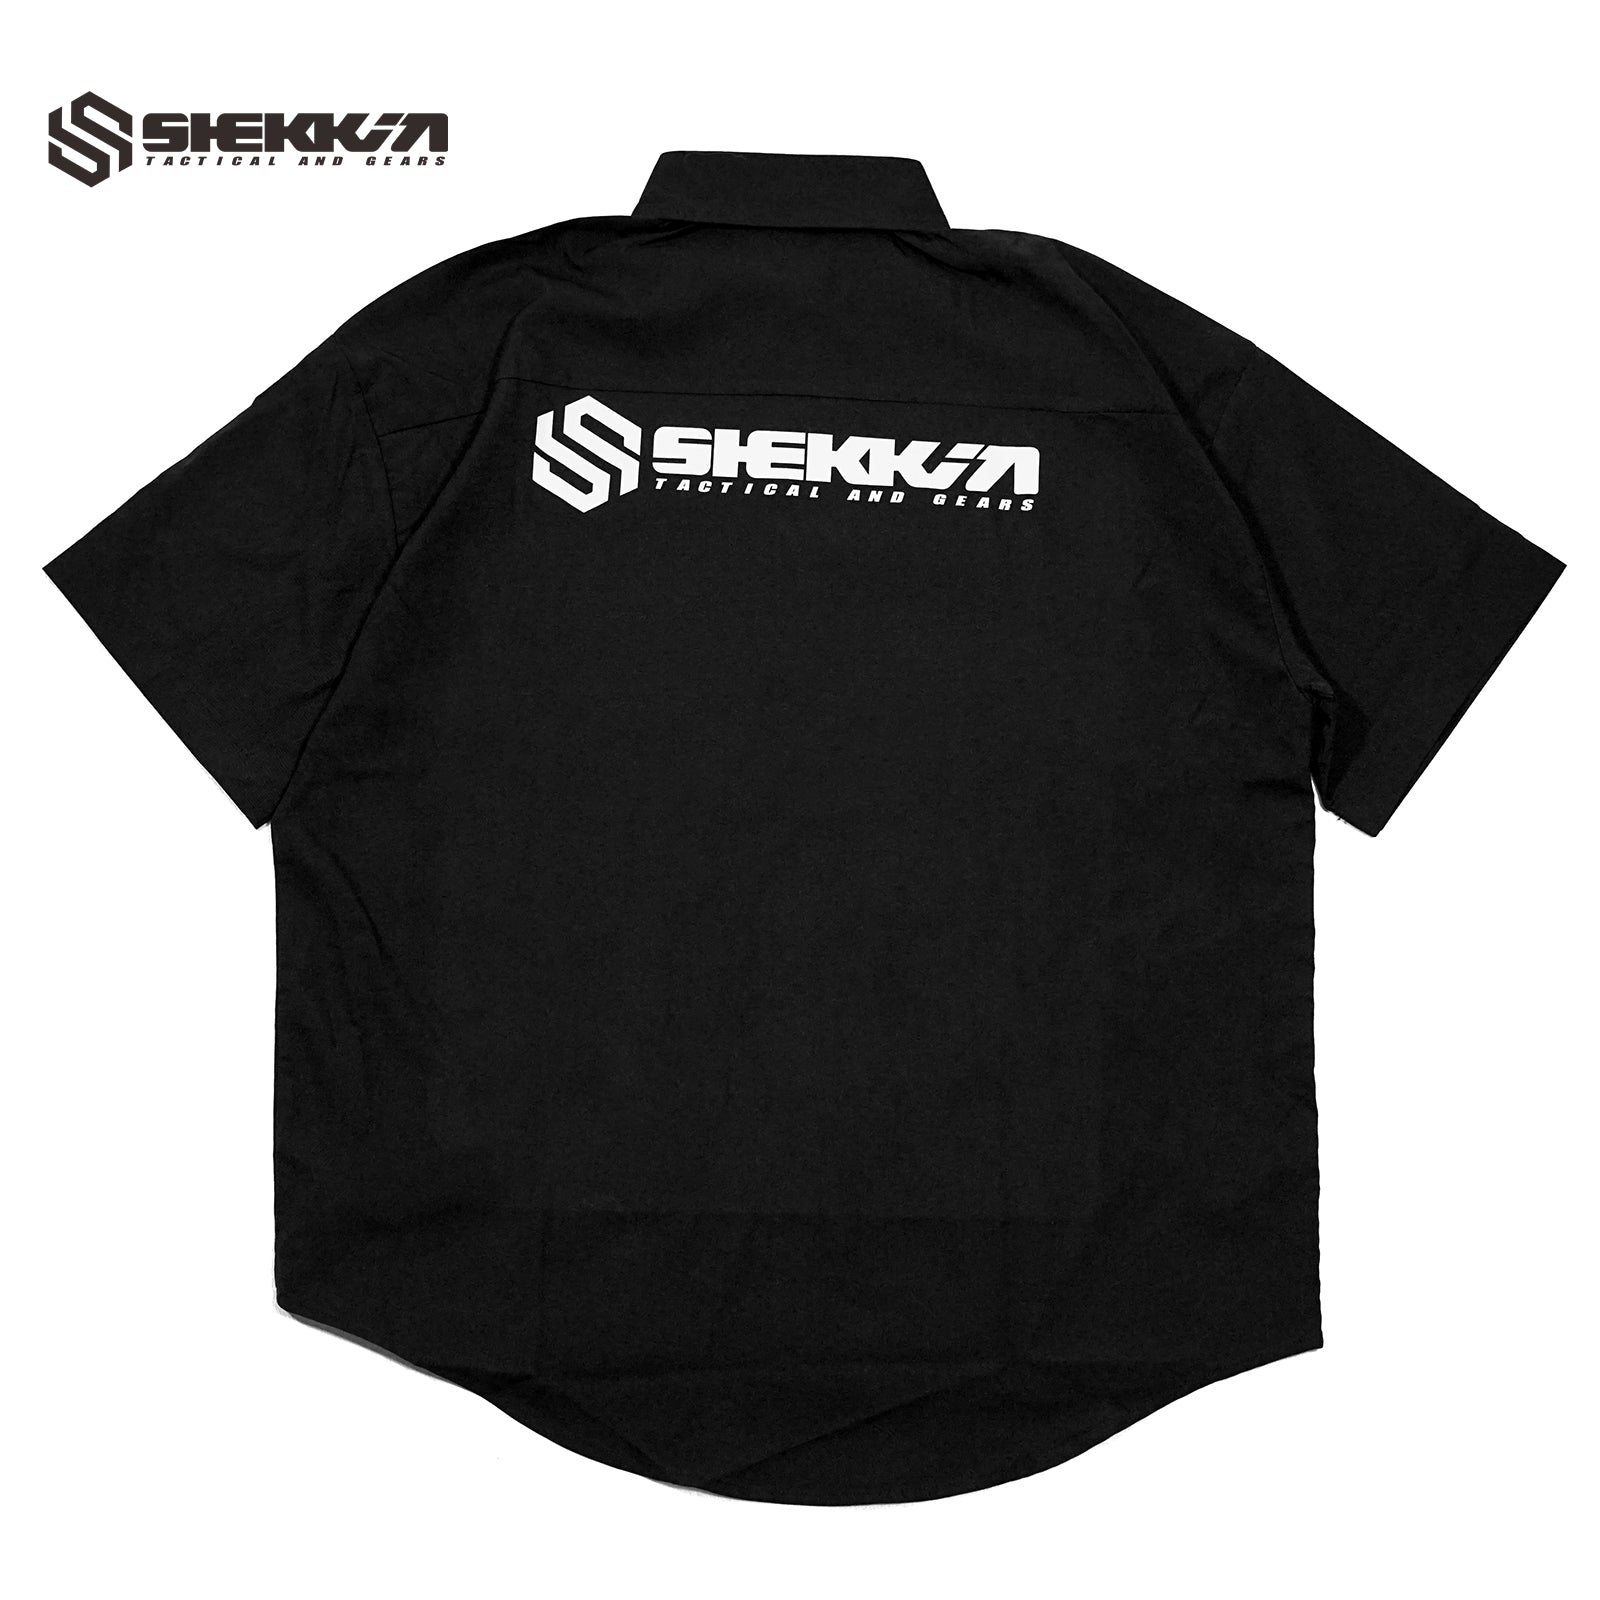 Shekkin gears Crew shirt - Shekkin Gears